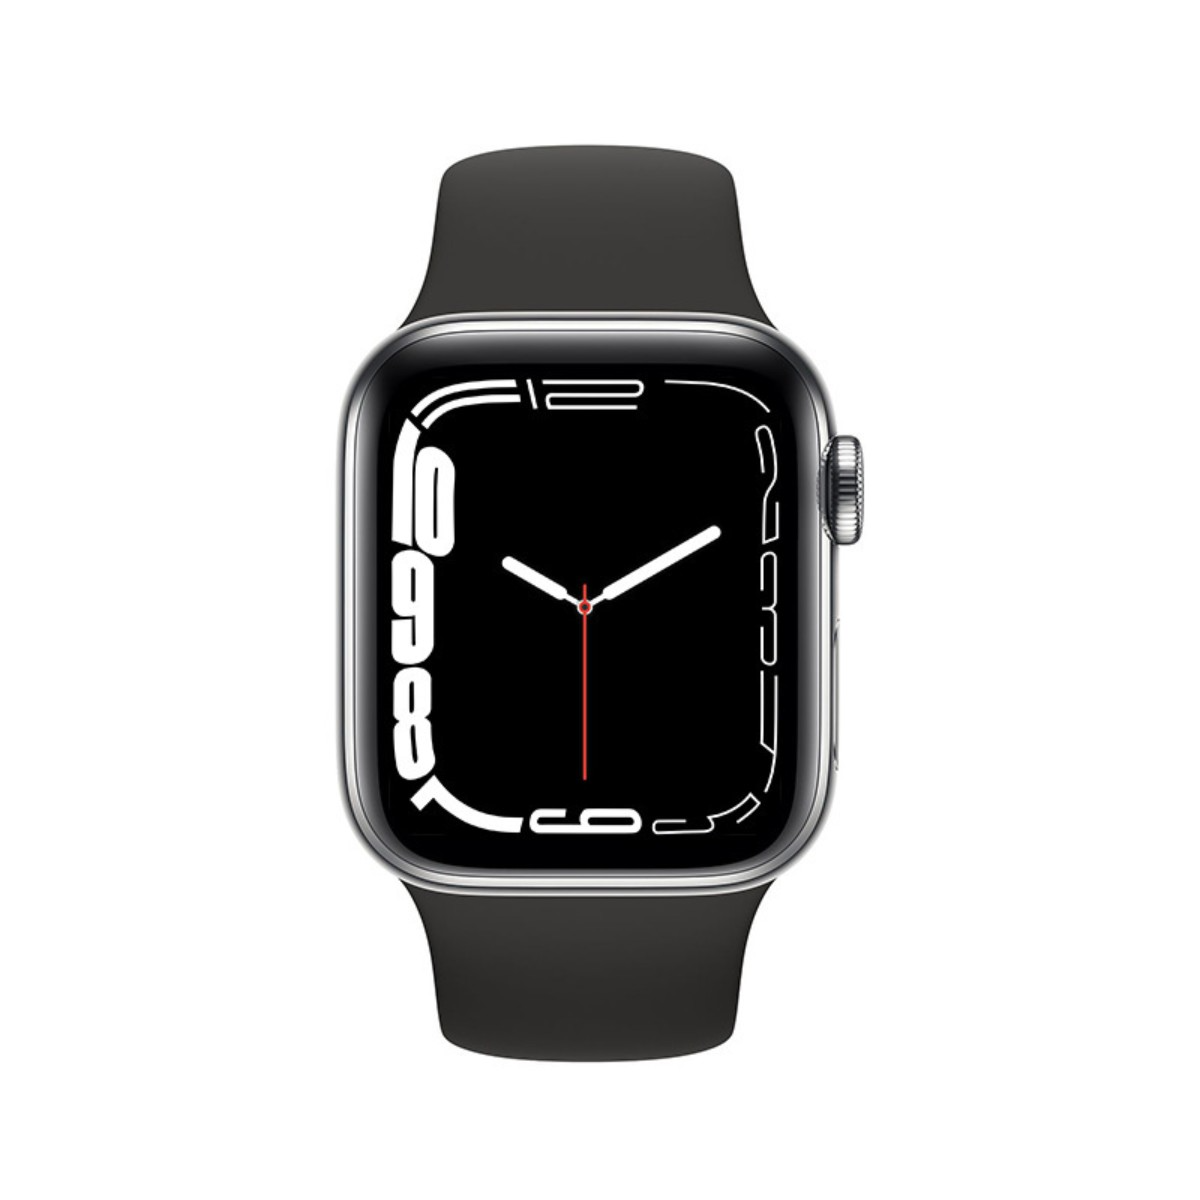 Bluetooth Pro Kunststoff Max Weiß - i8 mehrsprachig, Smartwatch wasserdicht, Smartwatch Silikon, Tasten ENBAOXIN Talk, zwei